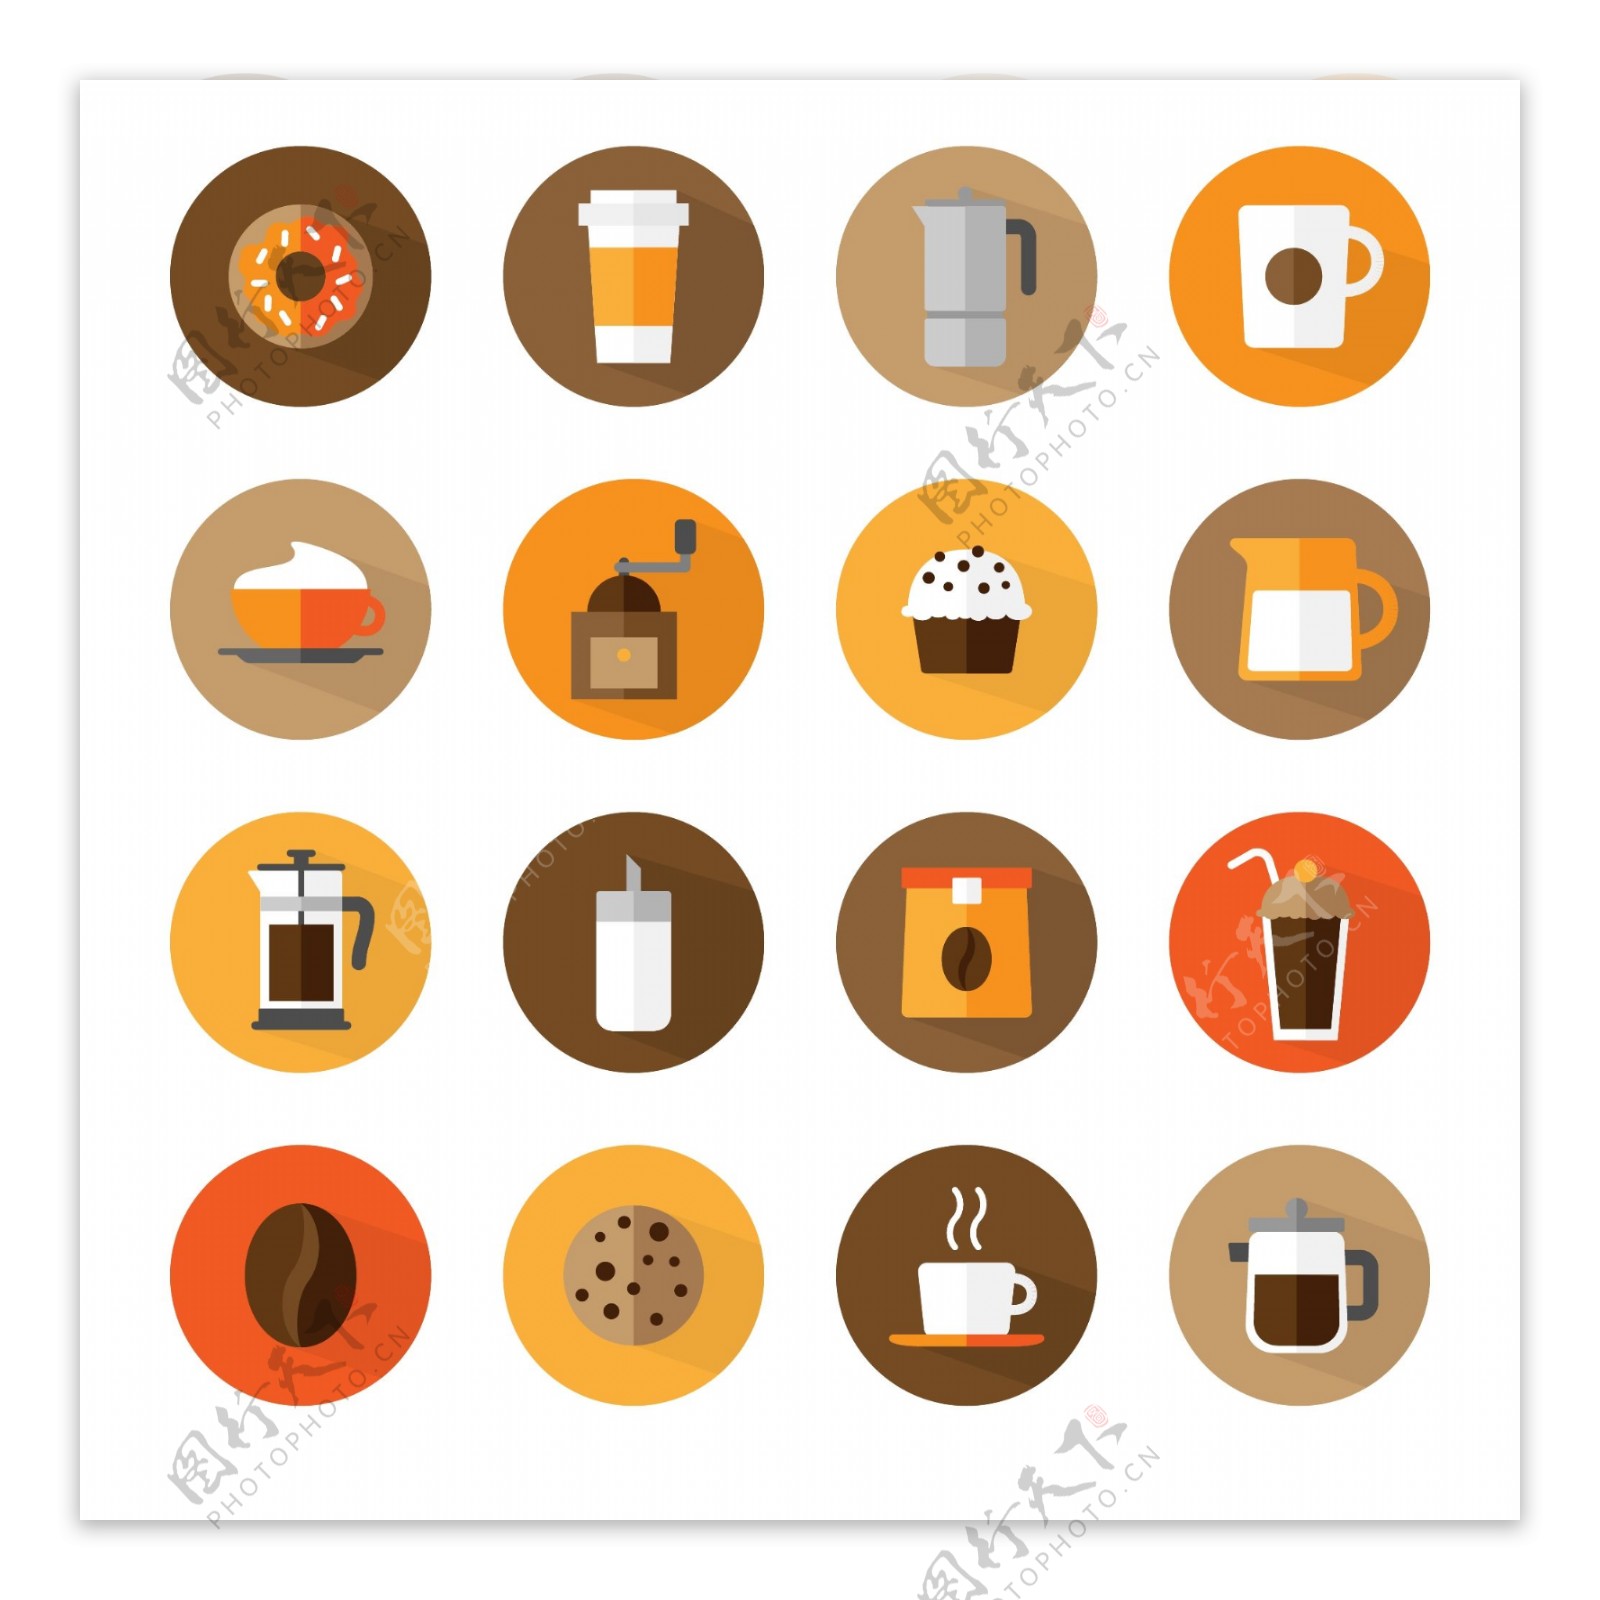 16款咖啡甜品图标矢量素材